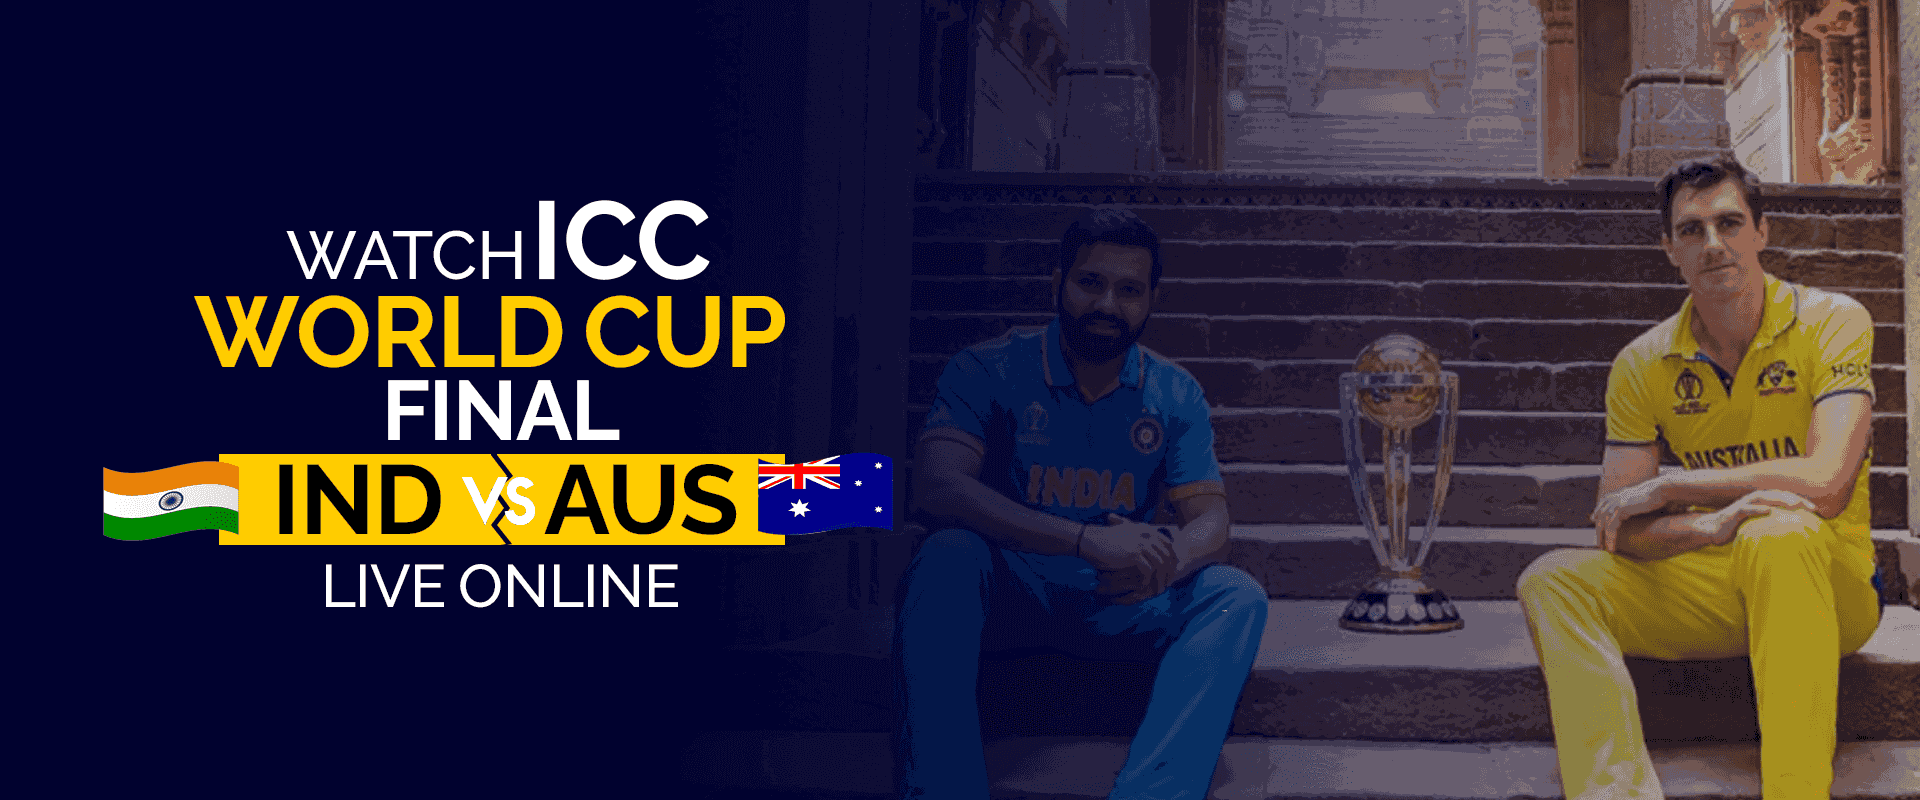 在线观看 ICC 世界总决赛 IND 对阵 AUS 直播